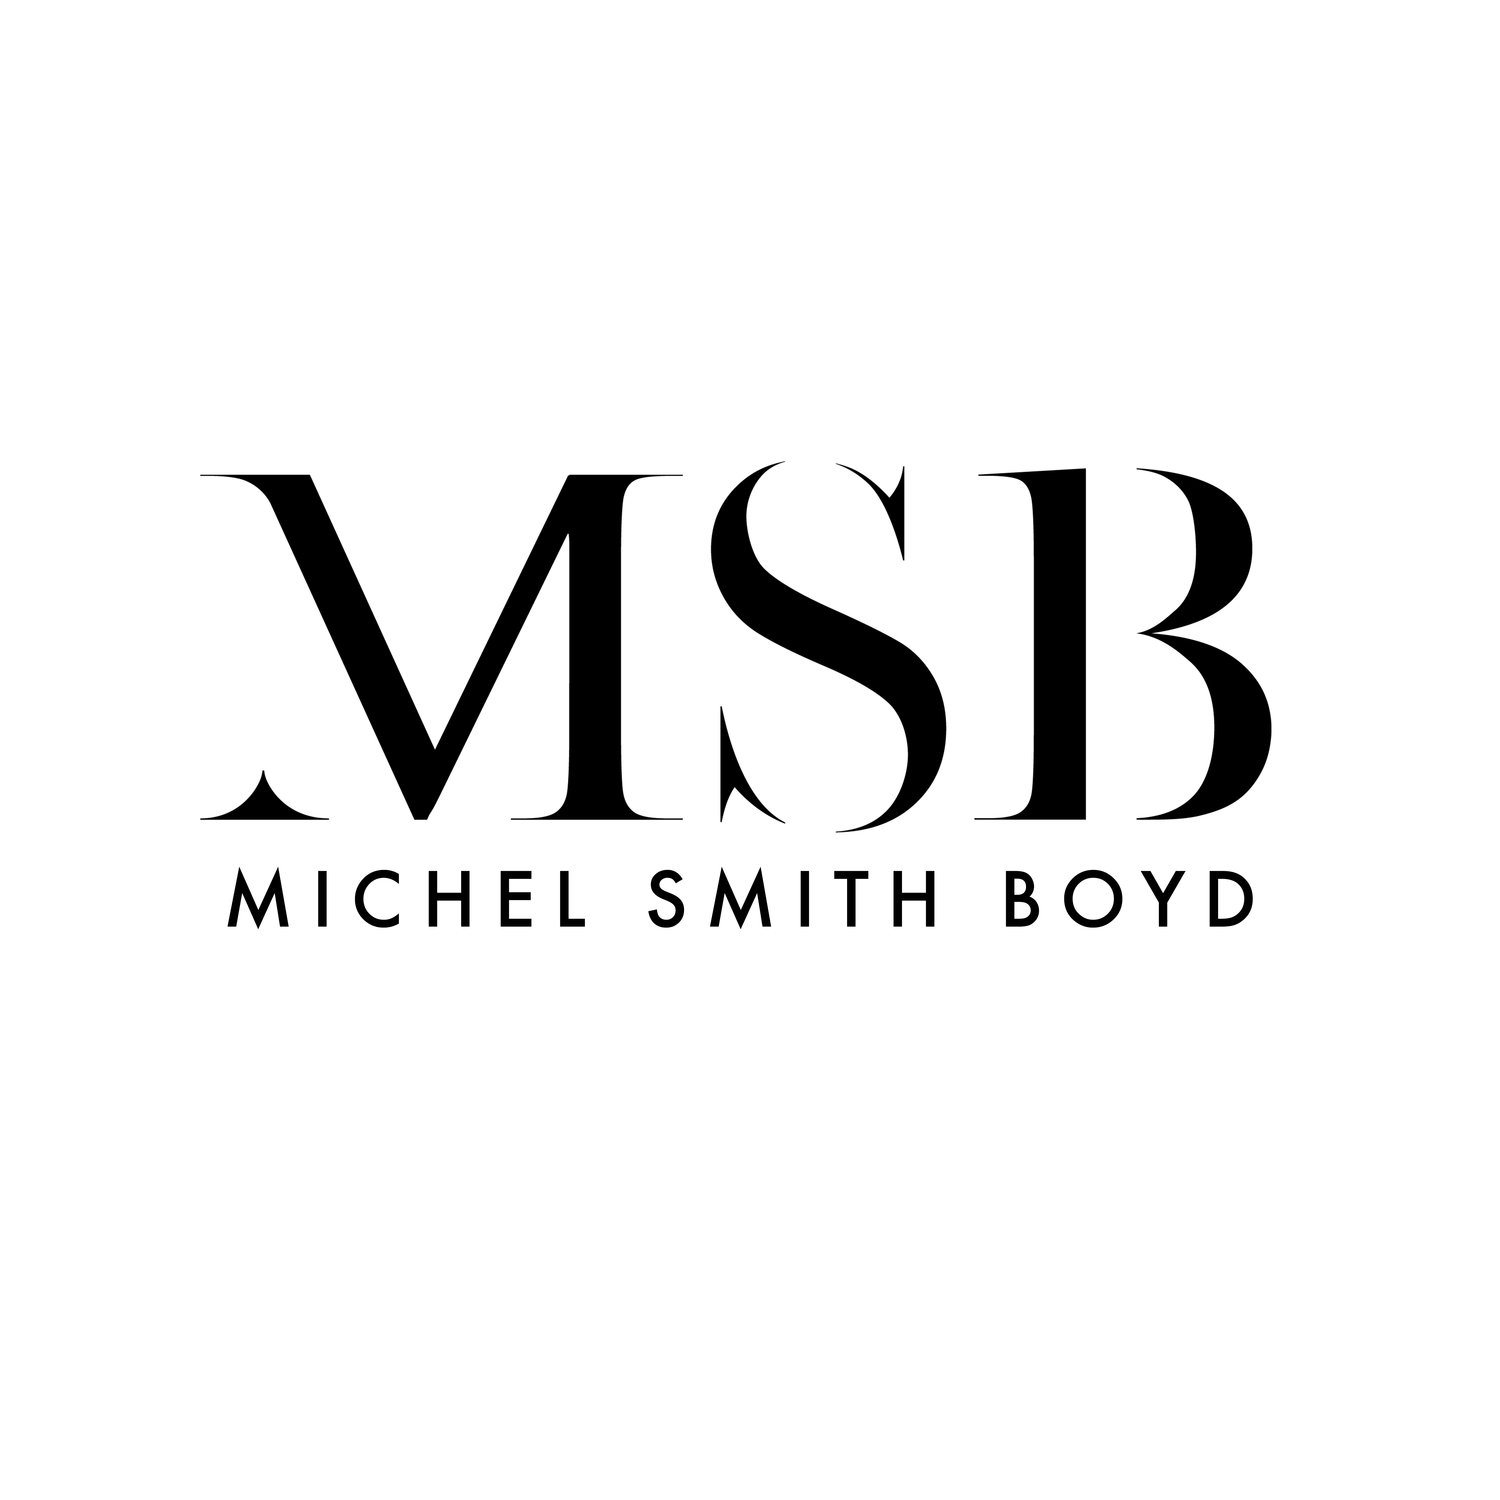 Michel Smith Boyd